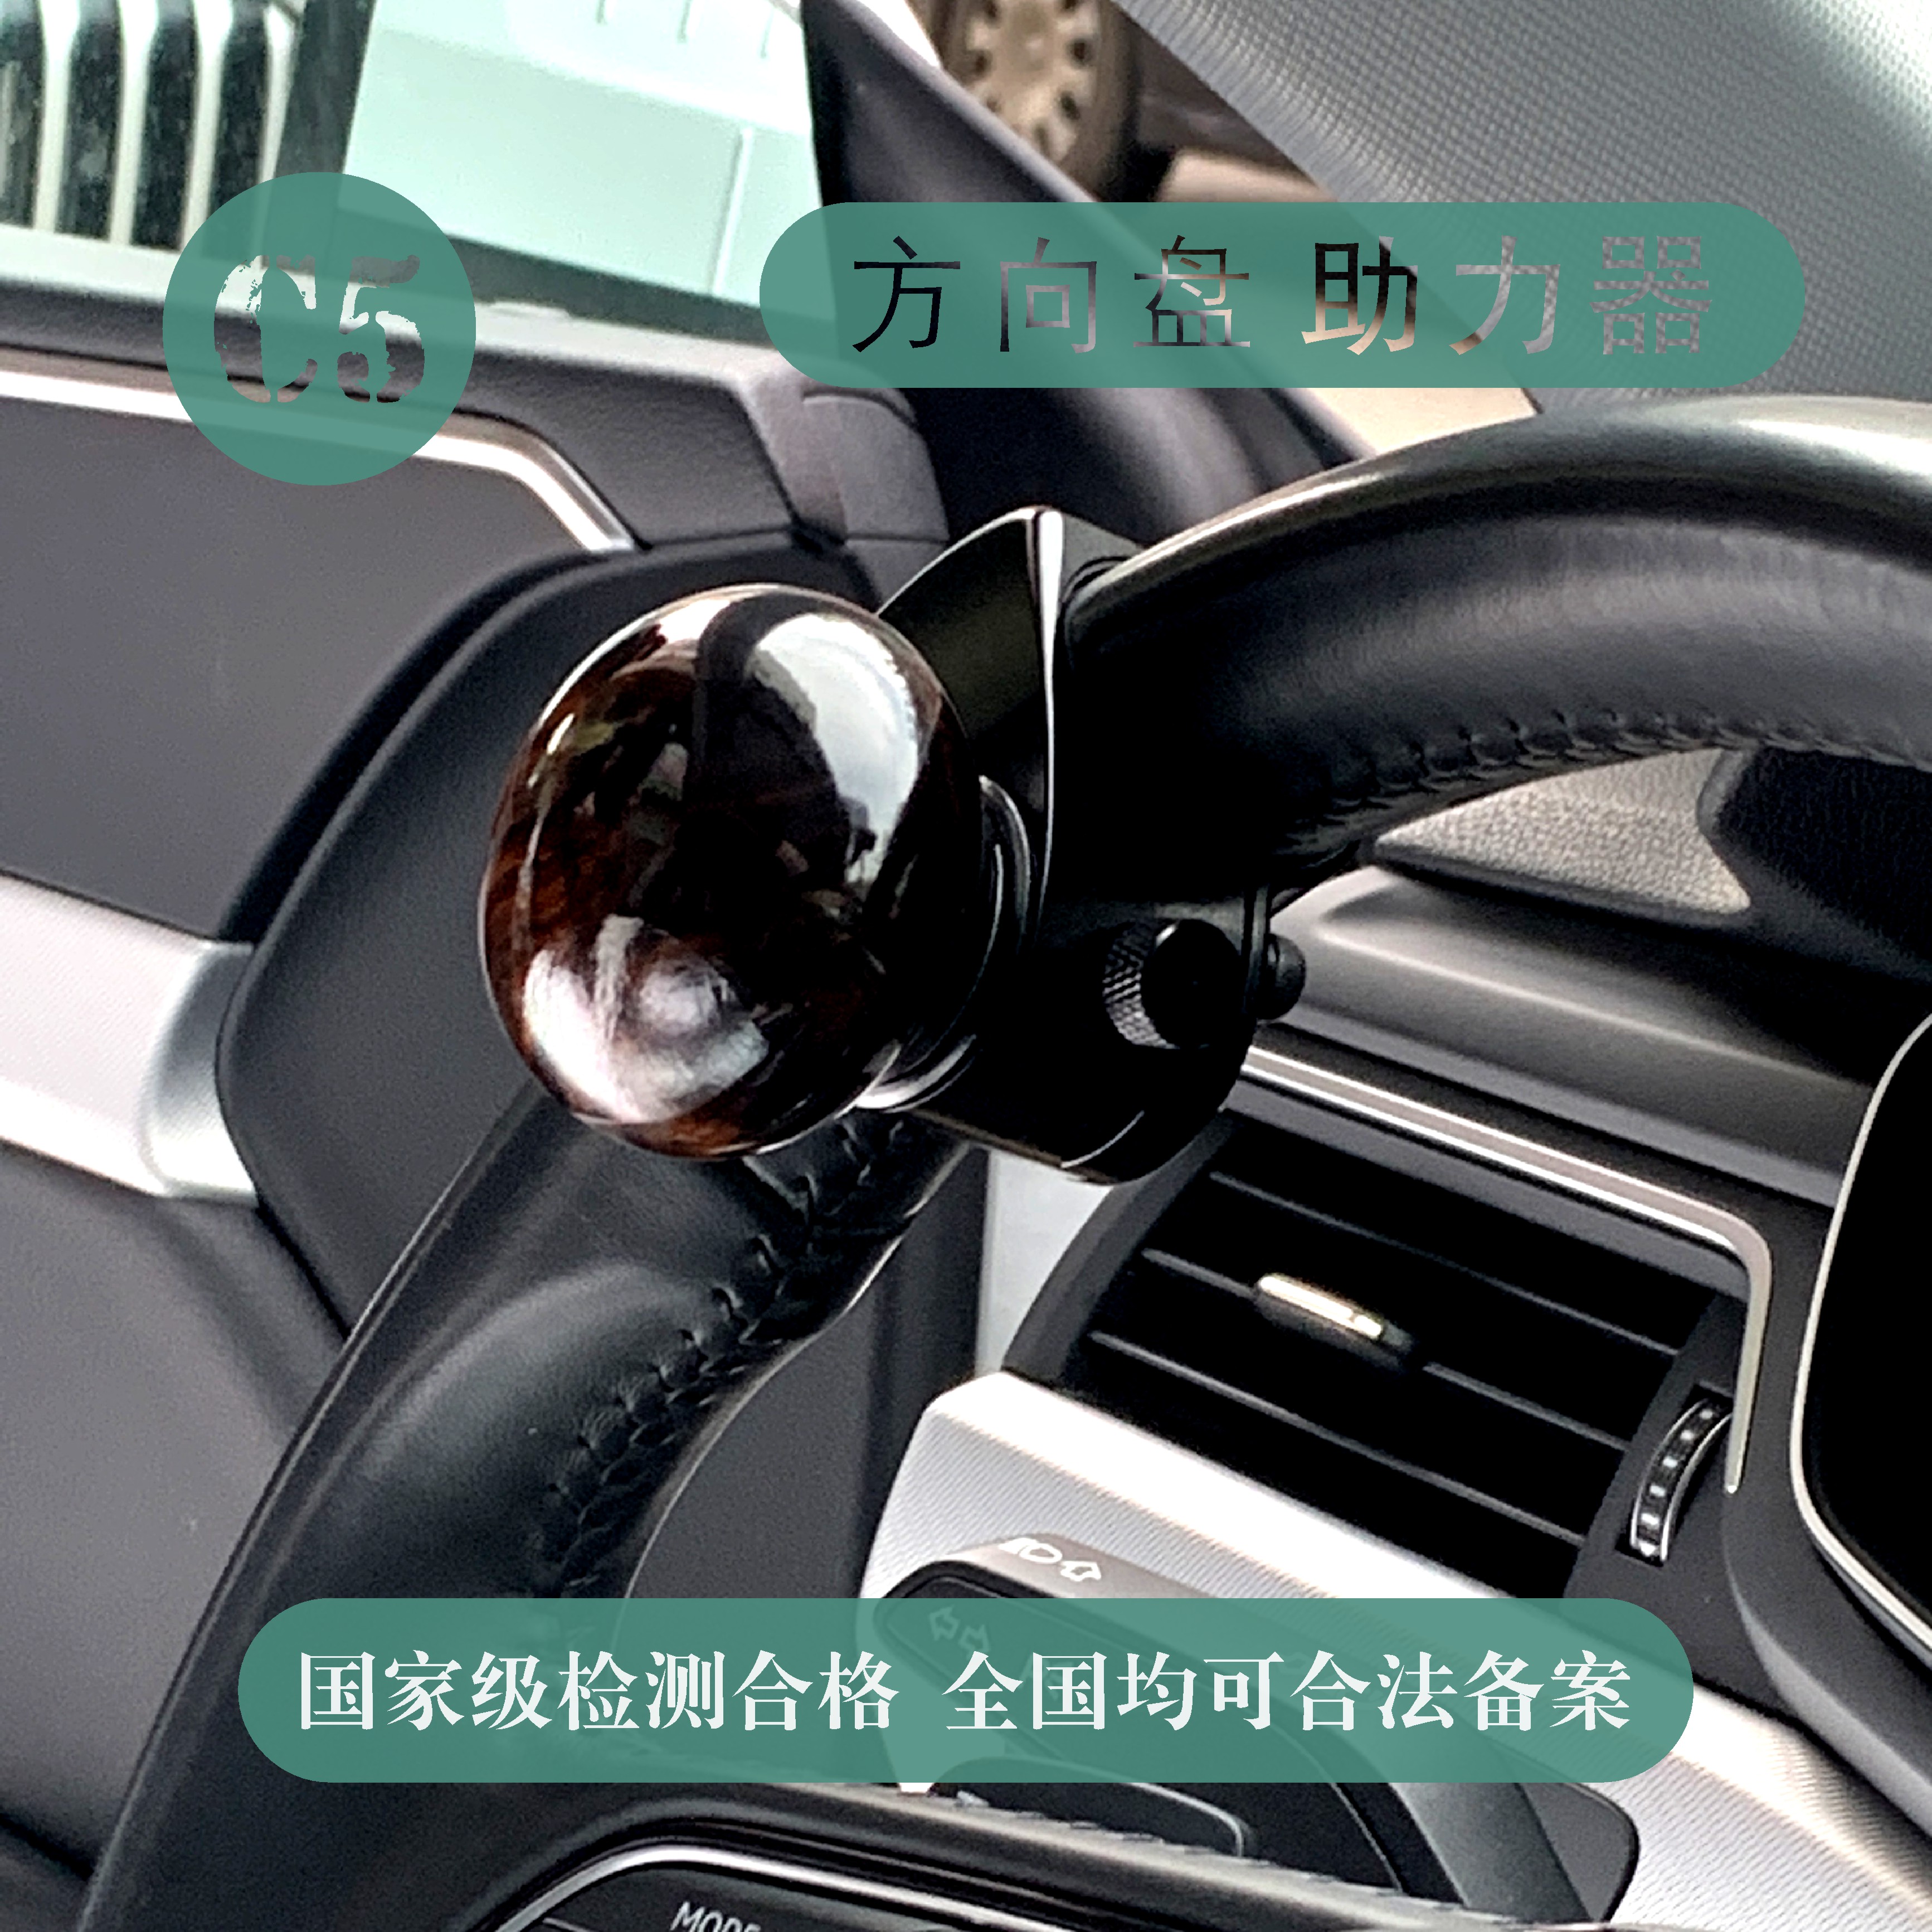 高端助力球C5驾照可备案方向盘助力器汽车辅助驾驶装置单手打方向